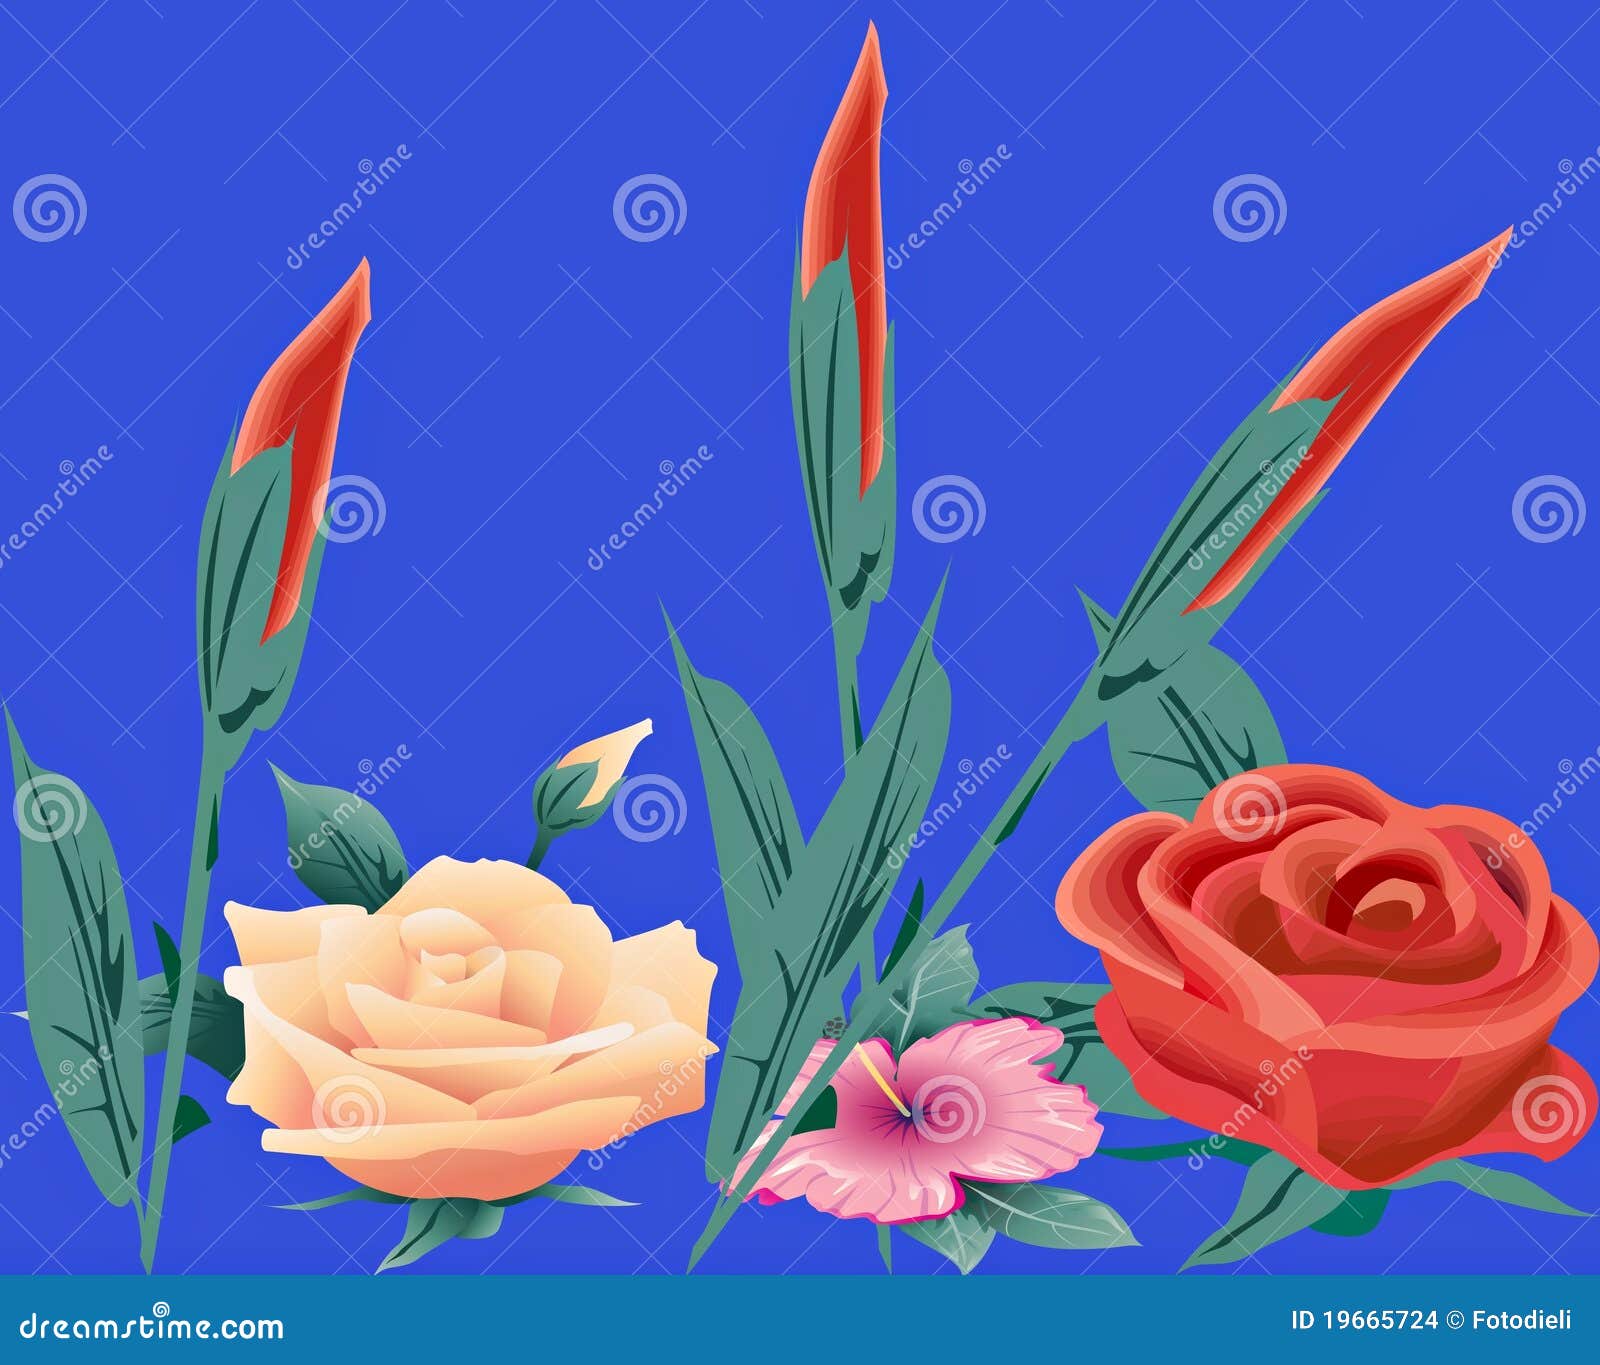 Flower Base 3d Stock Illustrations – 217 Flower Base 3d Stock  Illustrations, Vectors & Clipart - Dreamstime